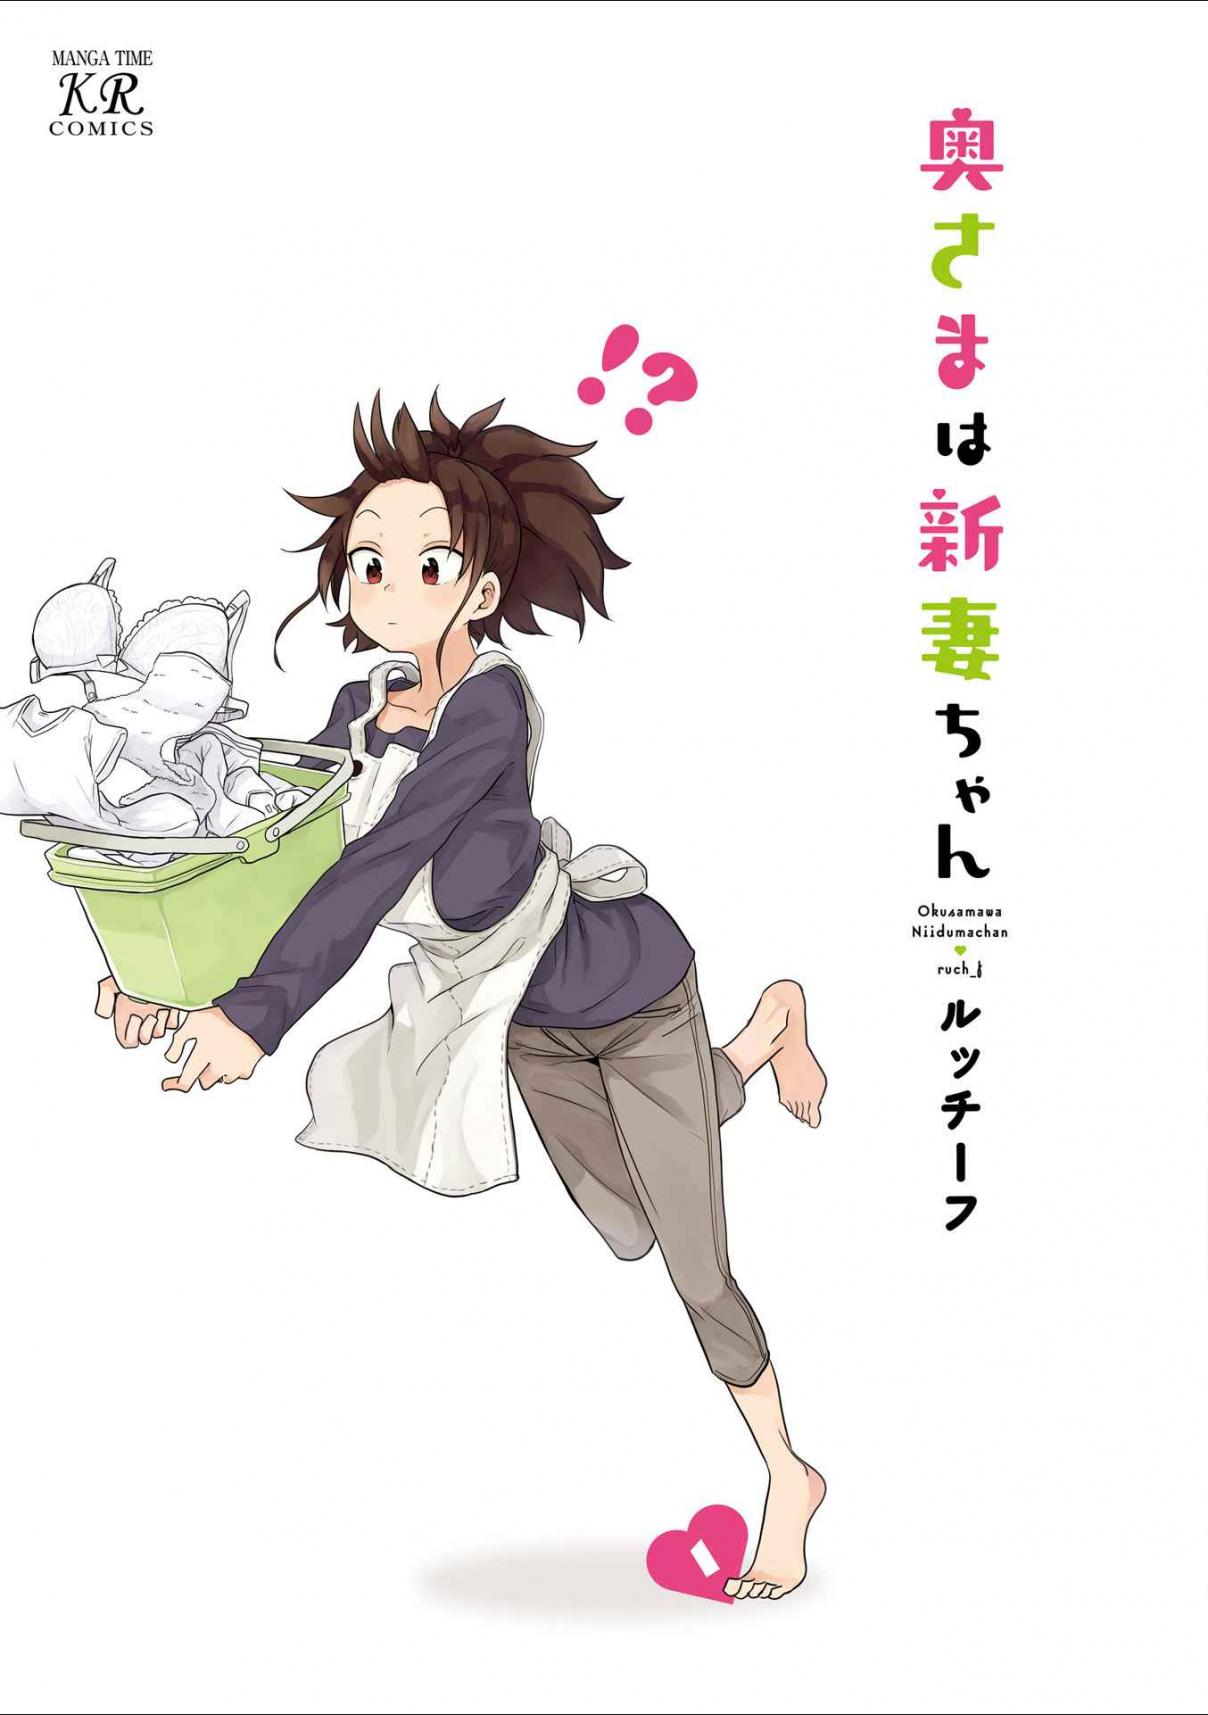 Oku sama ha Niizuma chan Vol. 1 Ch. 1 Kyoukara Shinbuseikatsu "Today Starts My Life as a Bride"